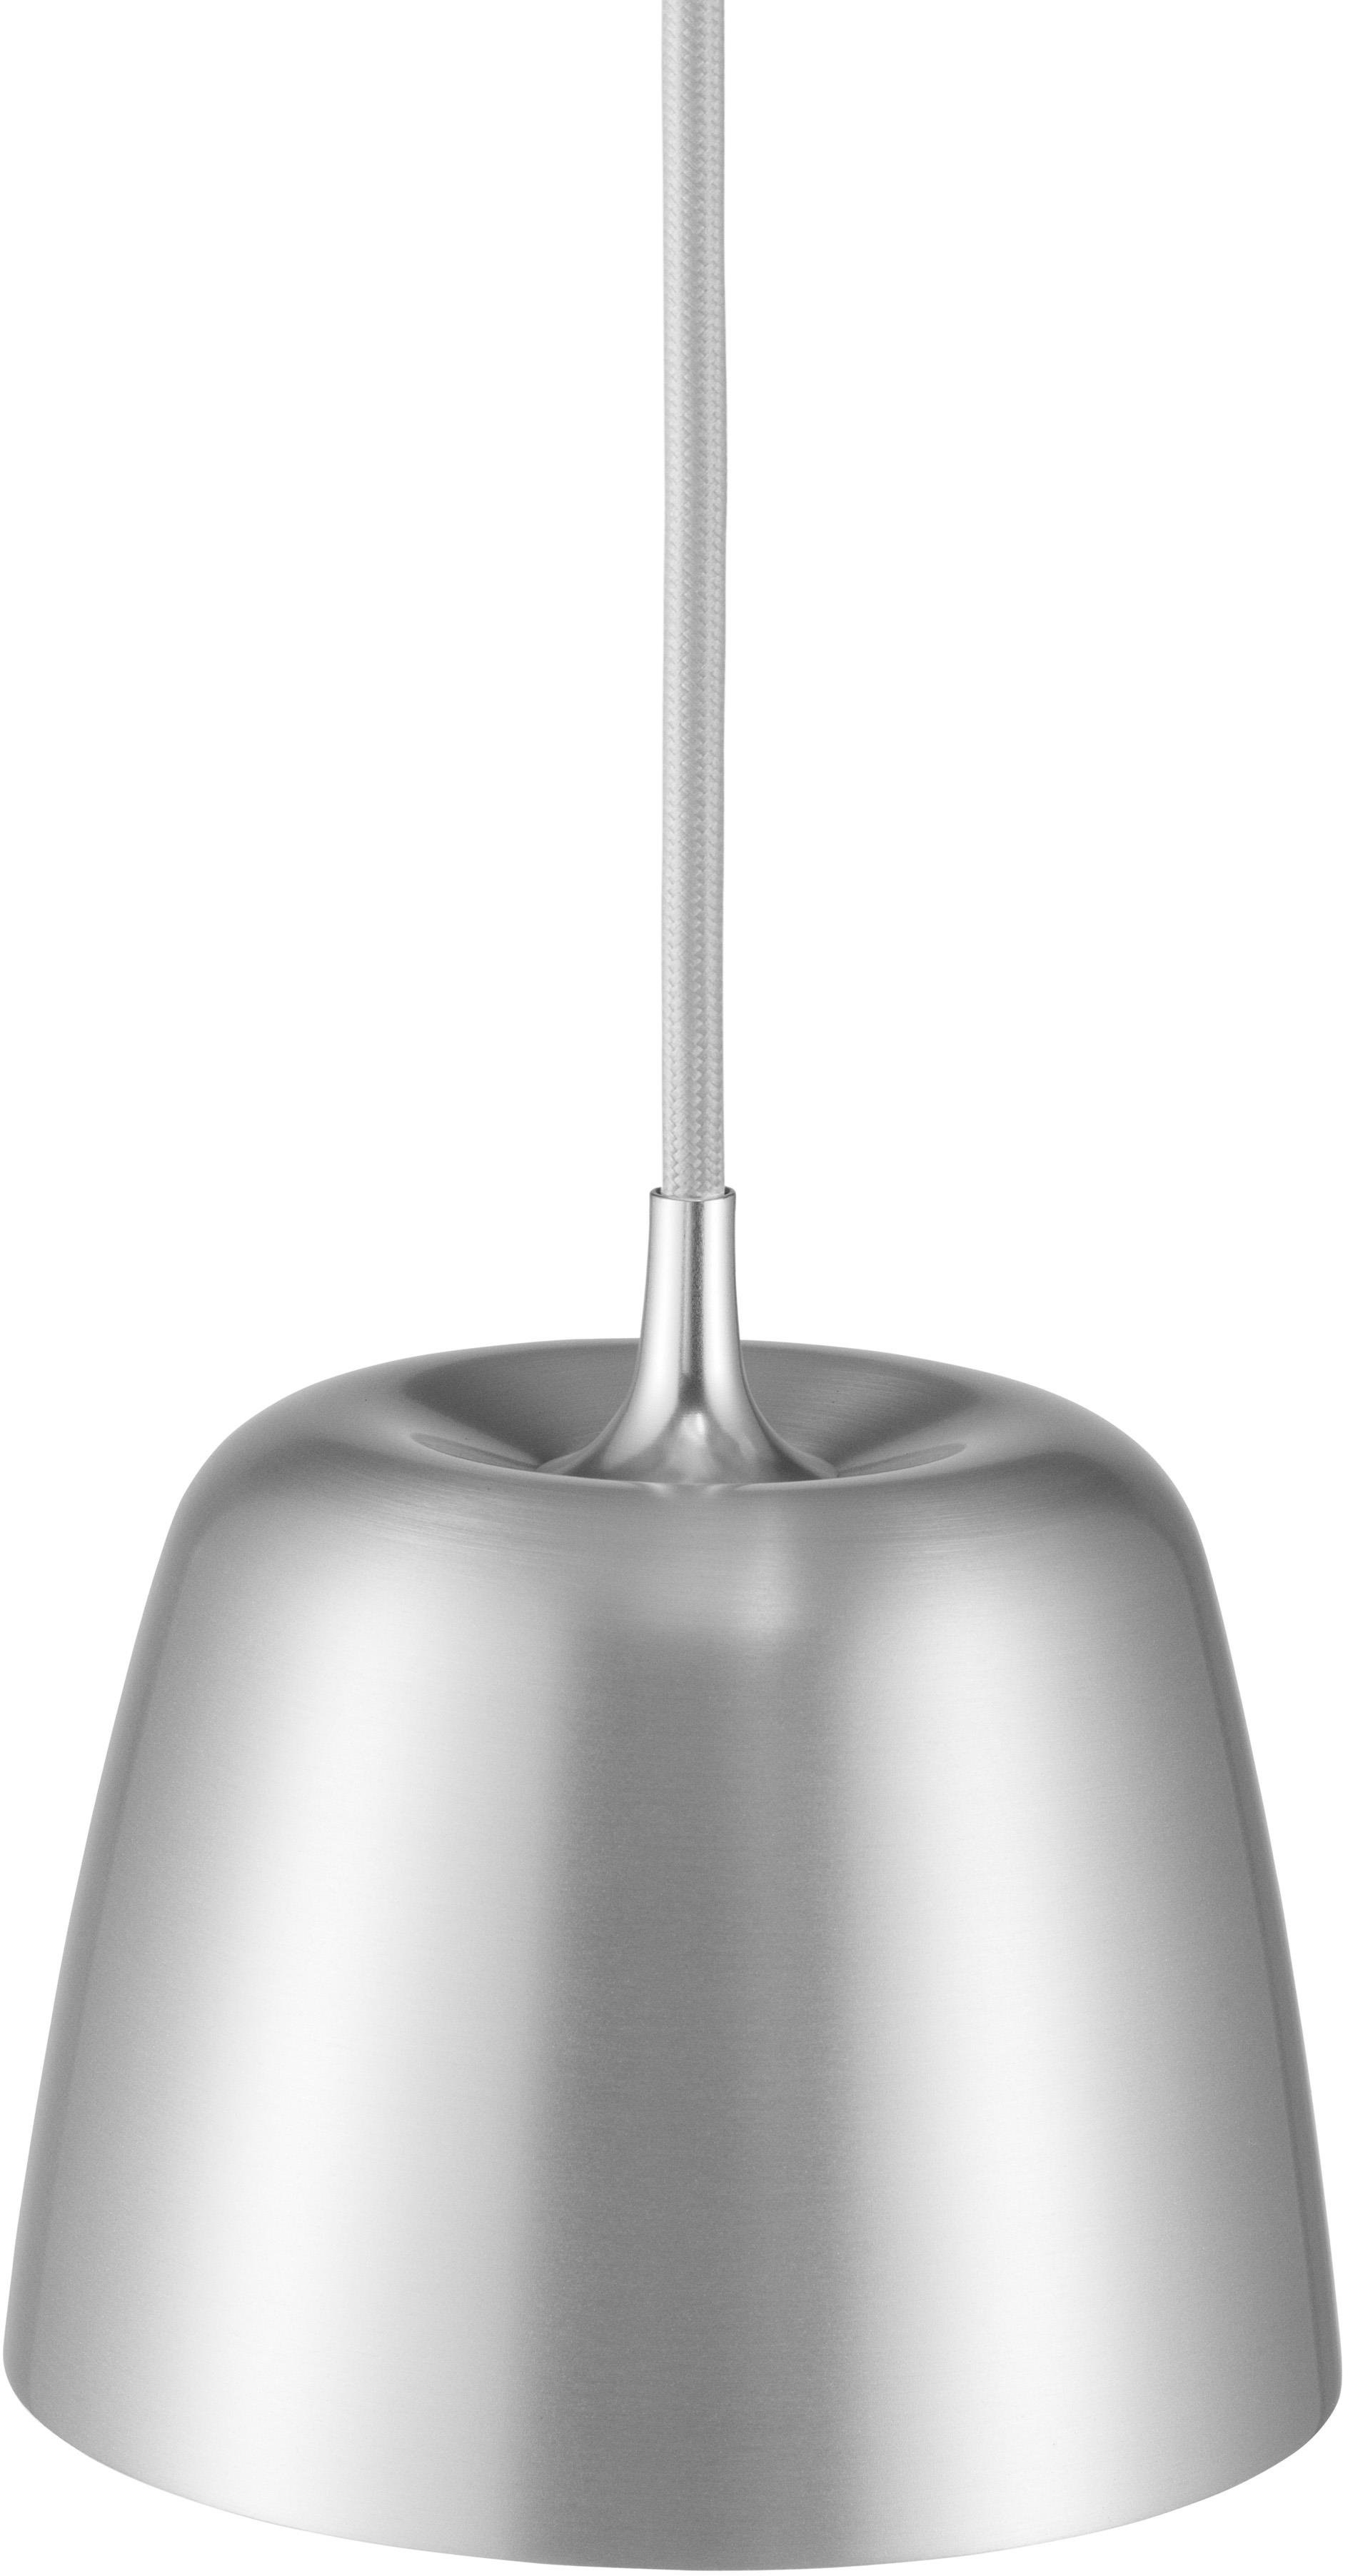 Tub Leuchte EU in Silber präsentiert im Onlineshop von KAQTU Design AG. Pendelleuchte ist von Normann Copenhagen